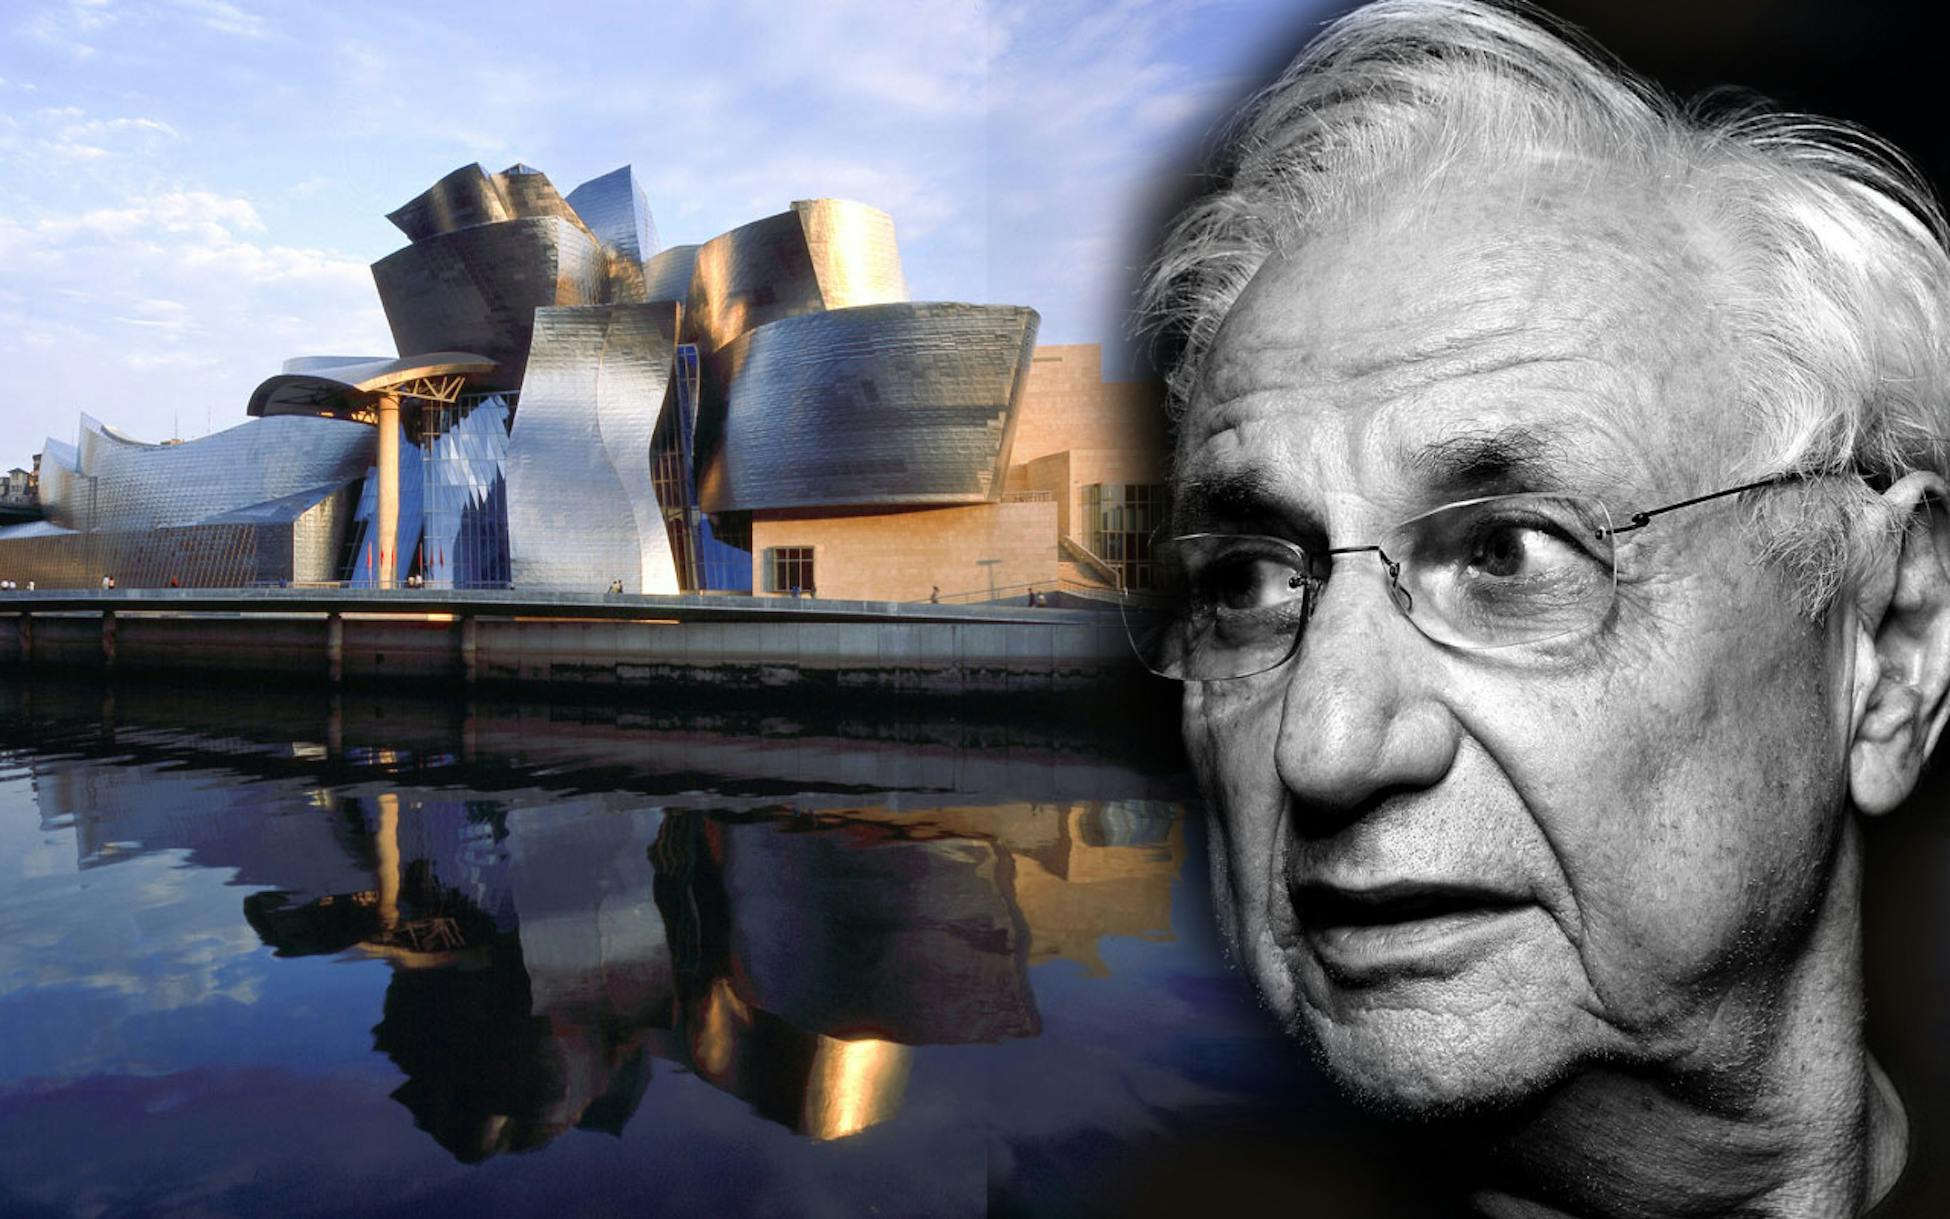 Гэри фрэнк. Фрэнк Гери. Фрэнк Гери (Frank Gehry). Фрэнк Гери (1929 г.). Фрэнк Оуэн Гери Архитектор.